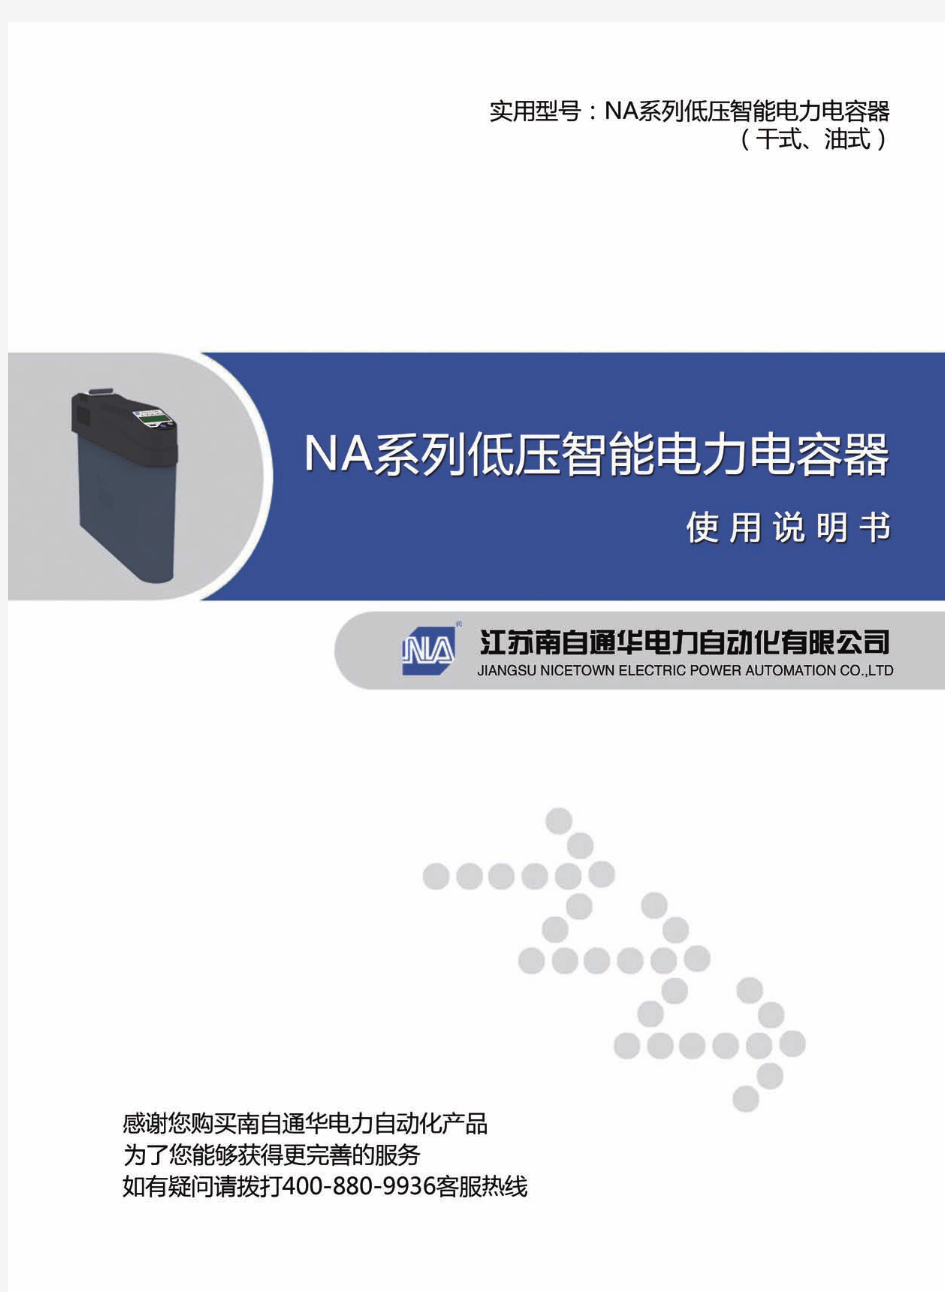 NA系列低压智能电力电容器使用说明书